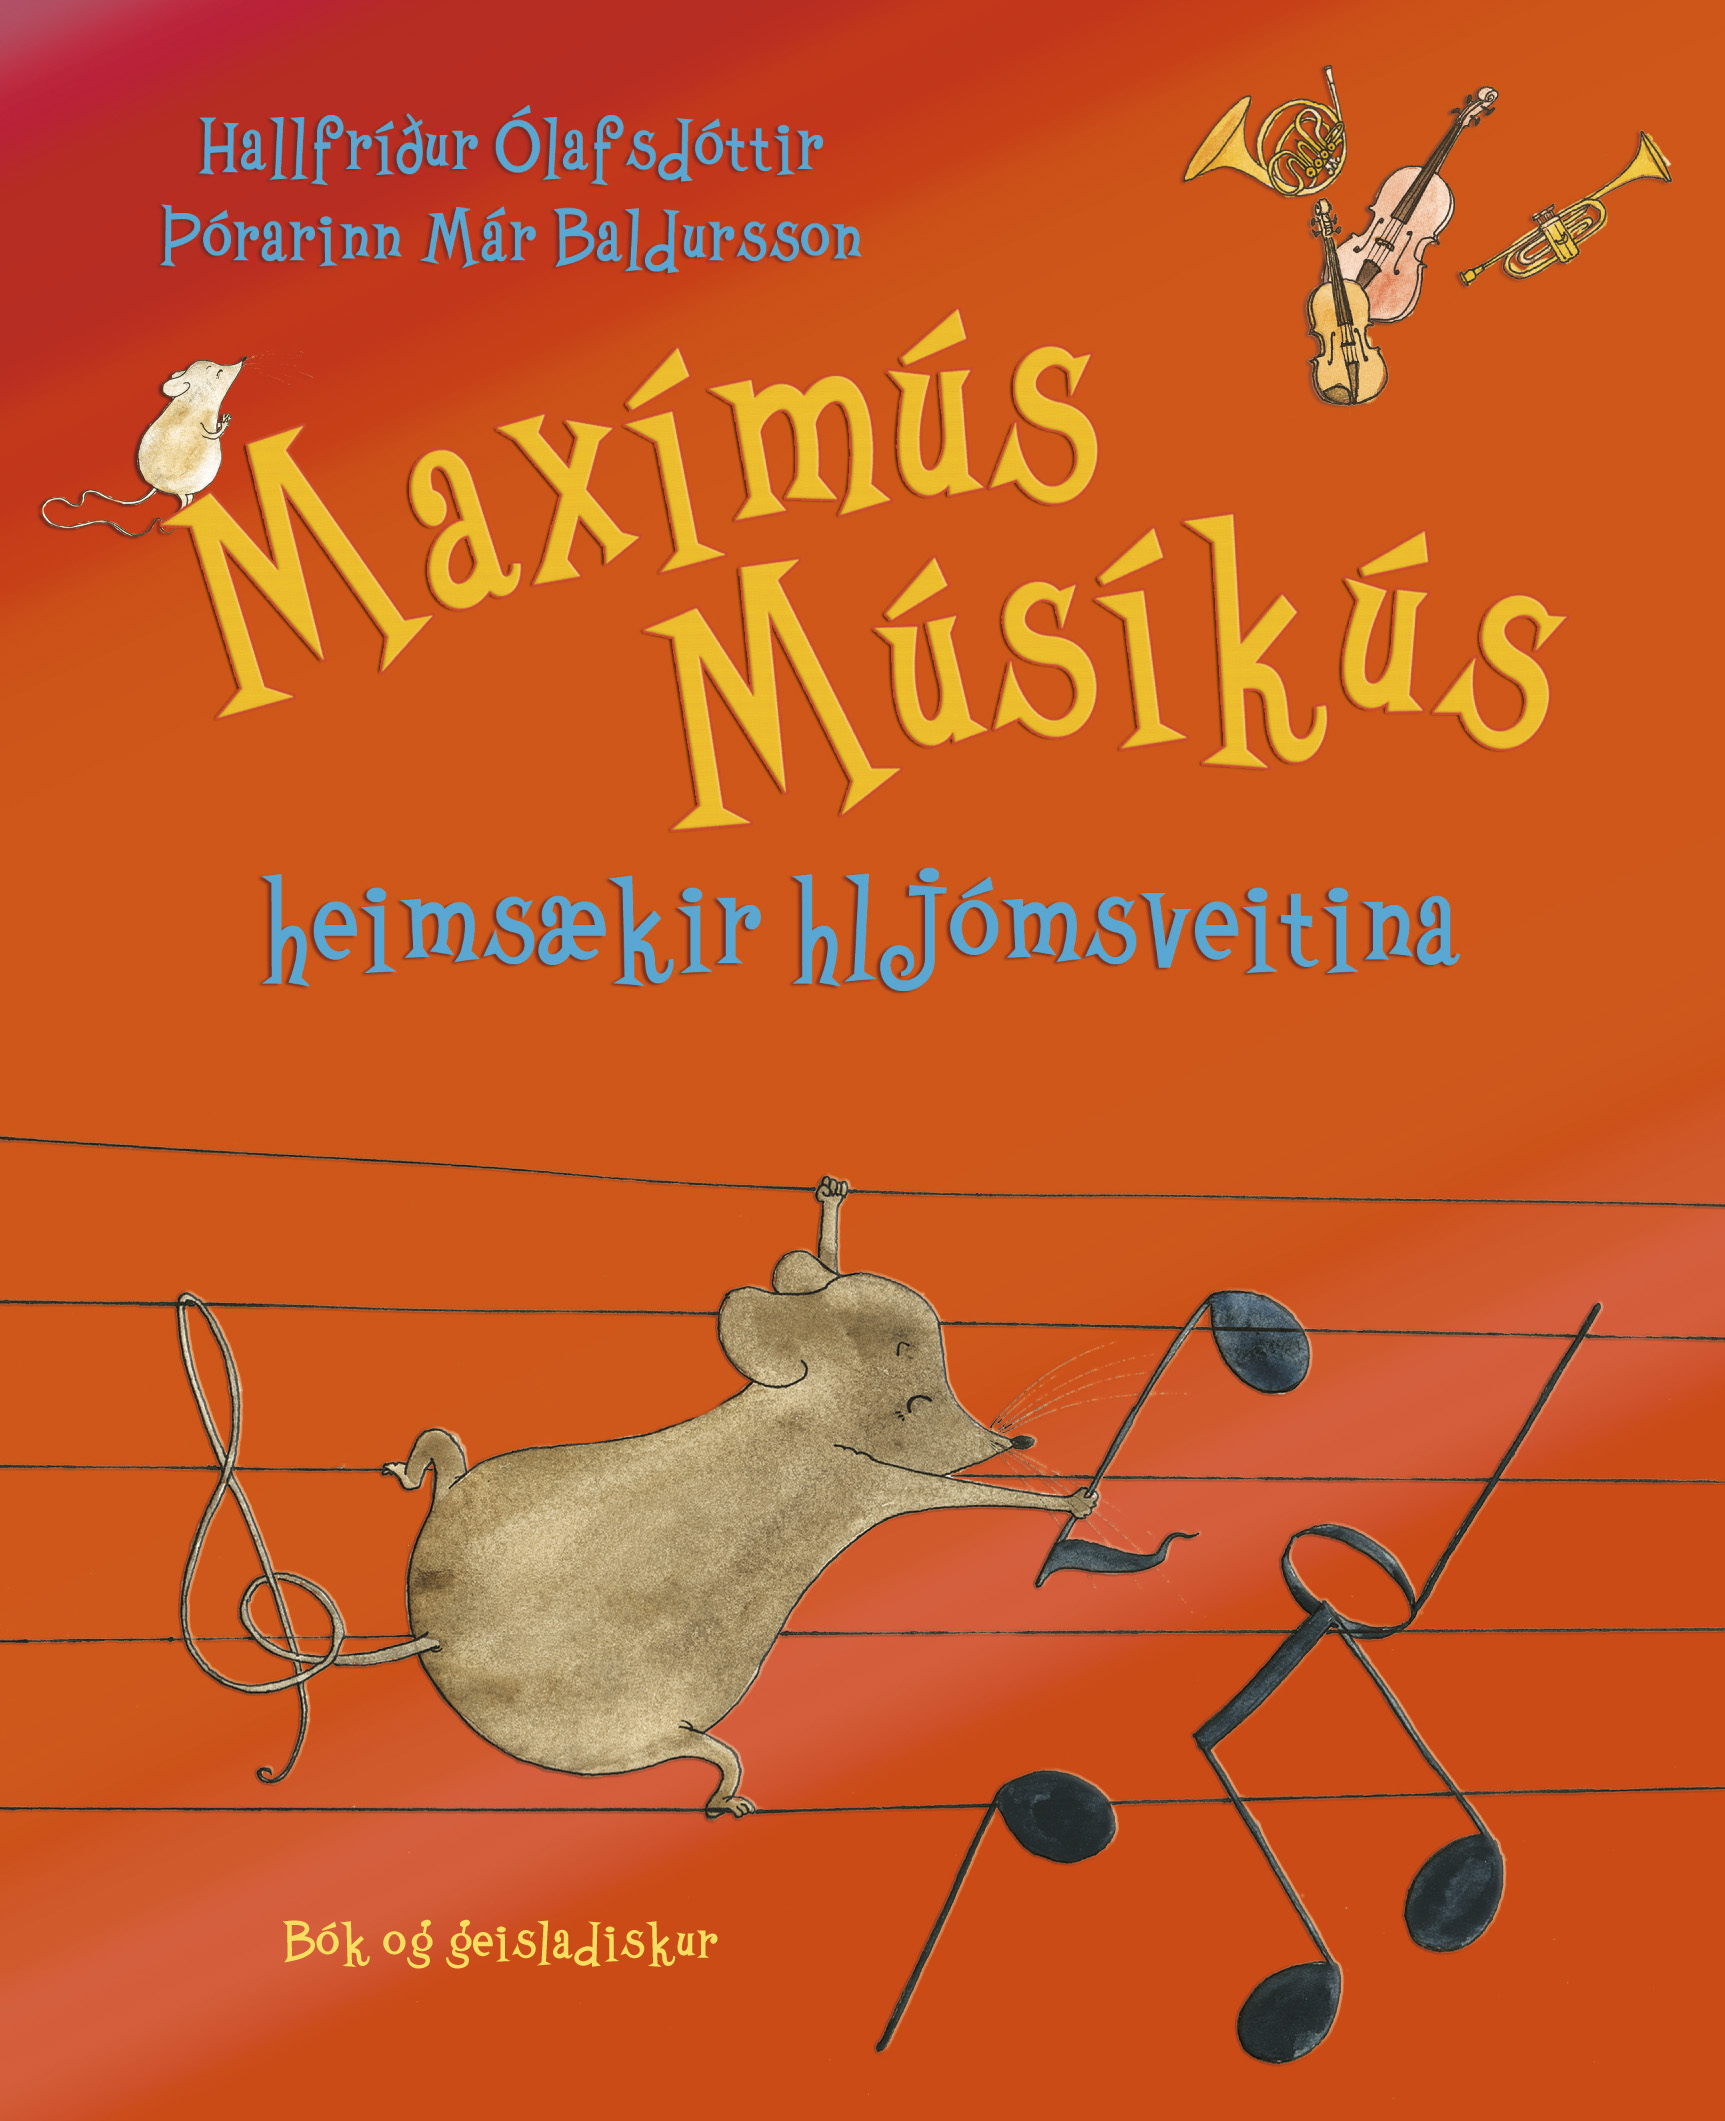 Maximus Musicus Meets the Choir (2014)